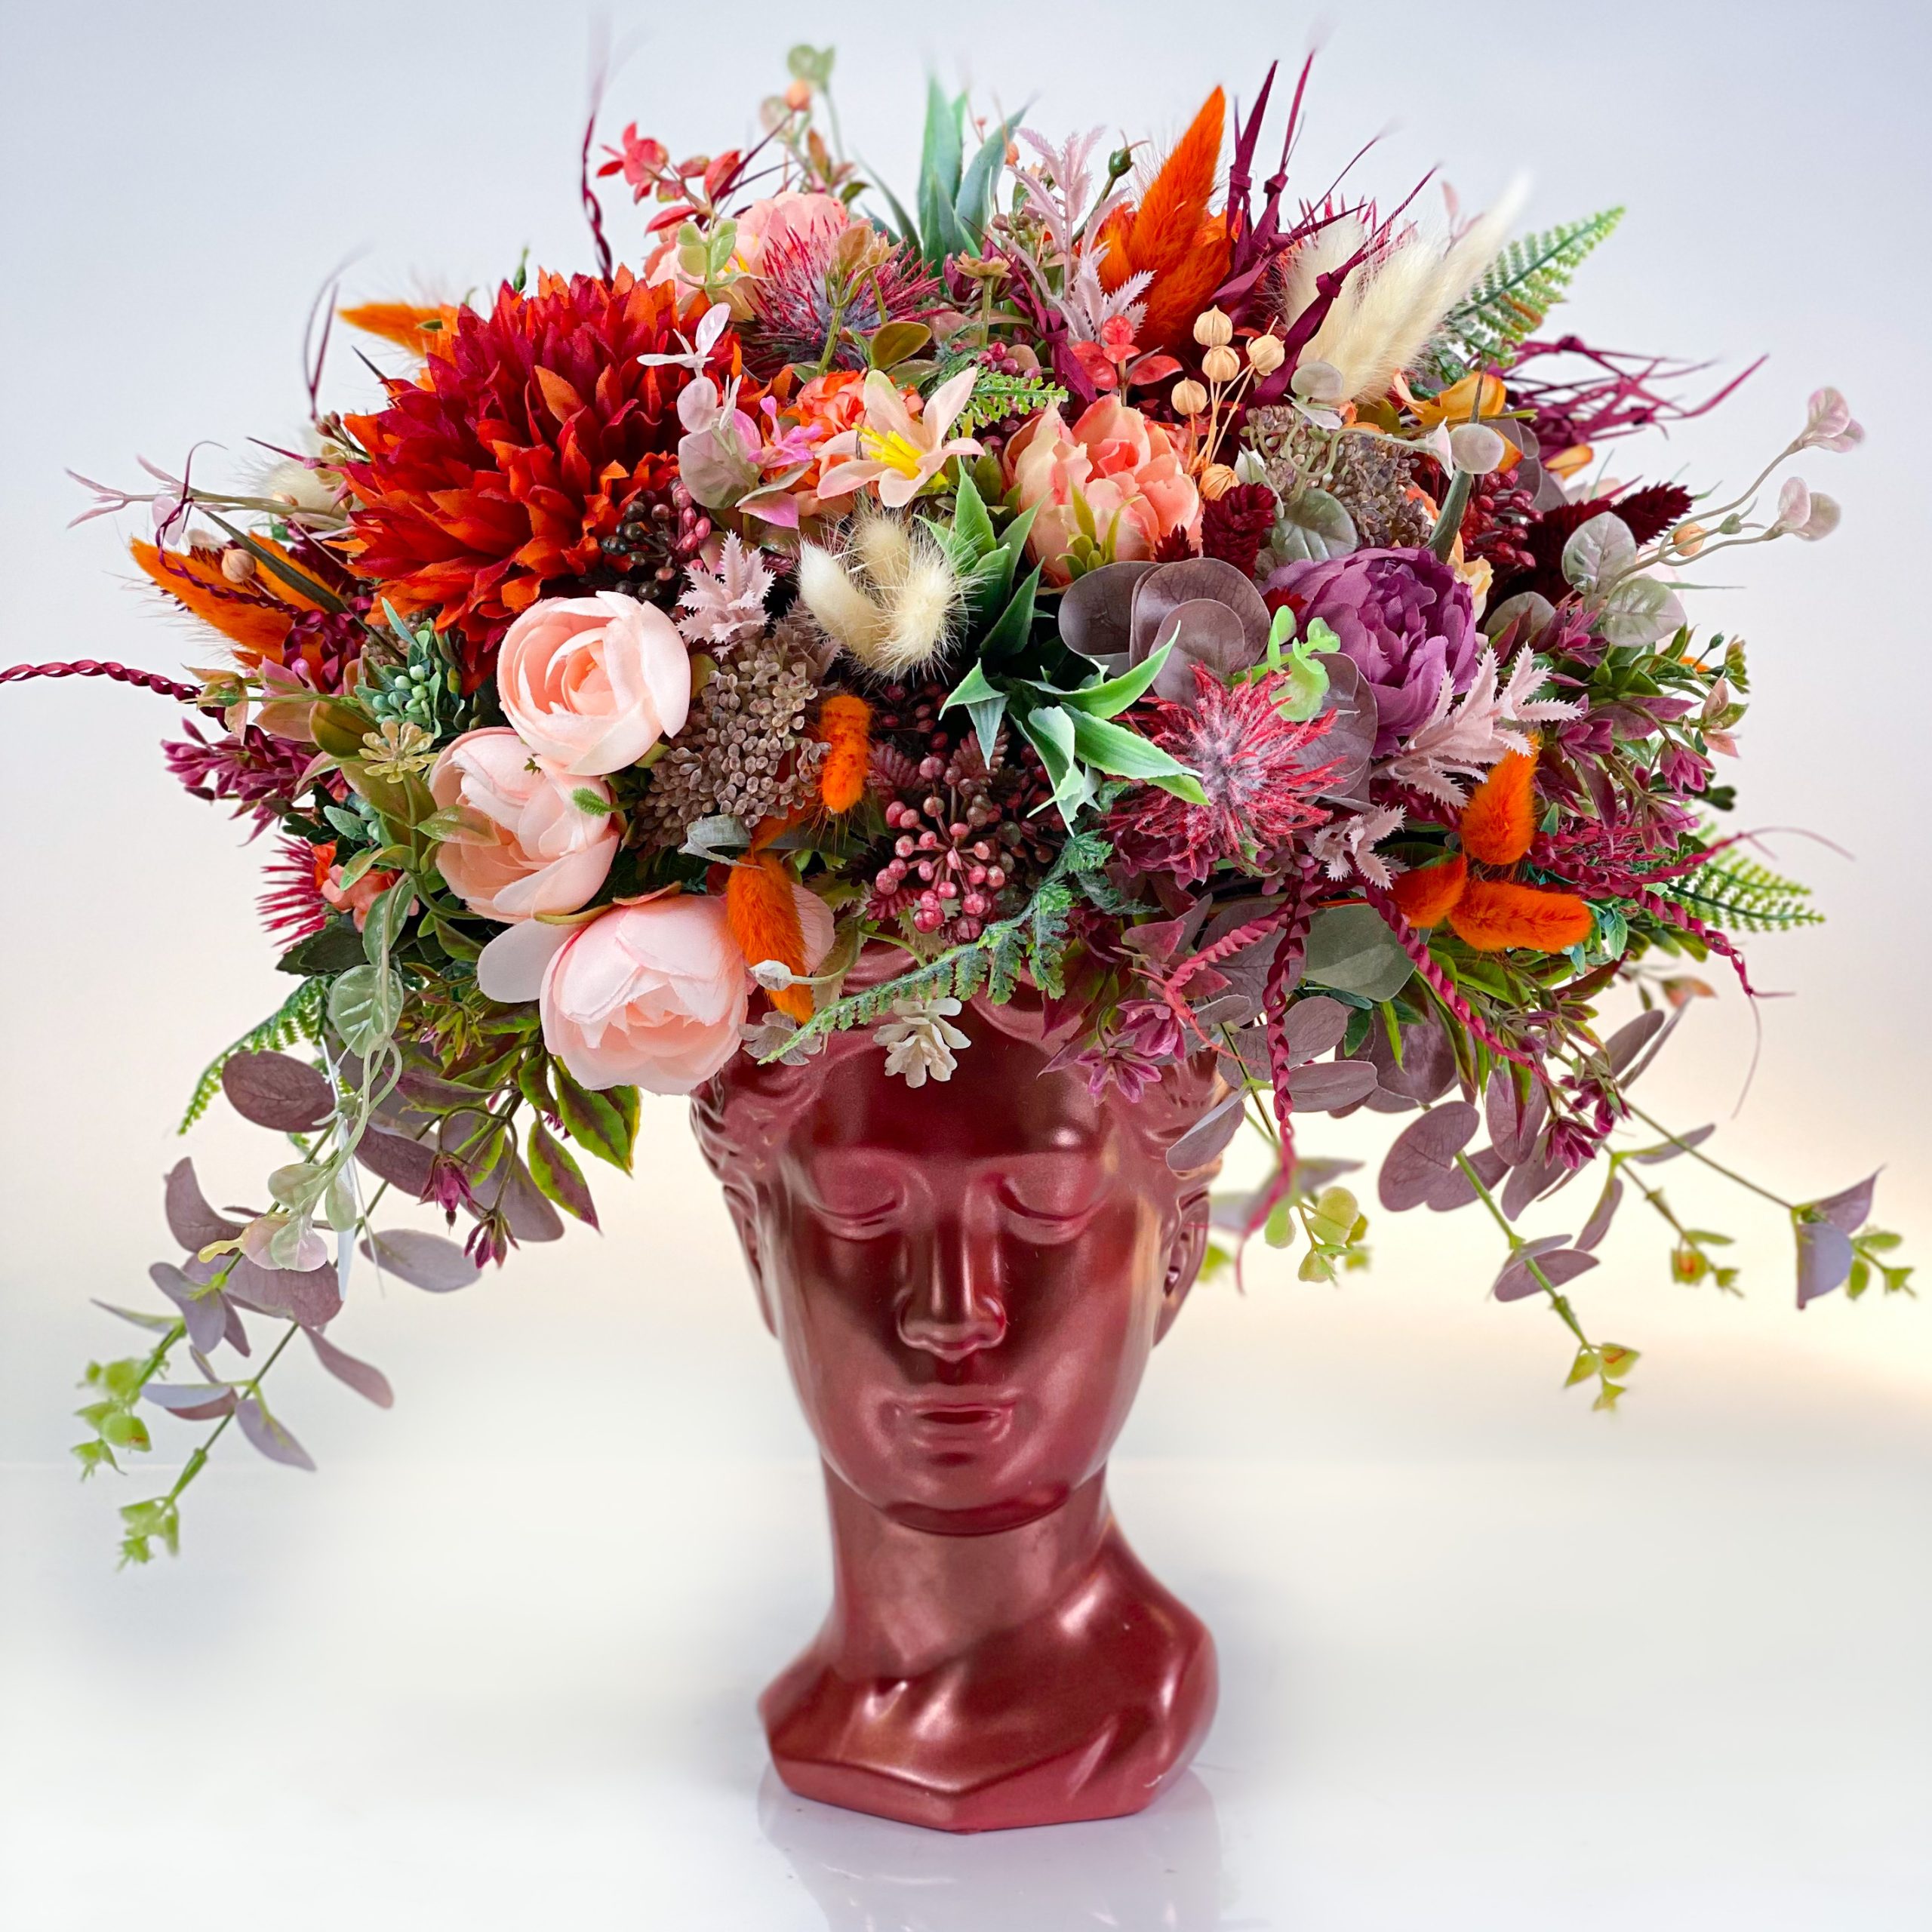 Cadou floral VENUS aranjament cu flori uscate si artificiale exotic theme in rosu portocaliu si bordo 1 scaled